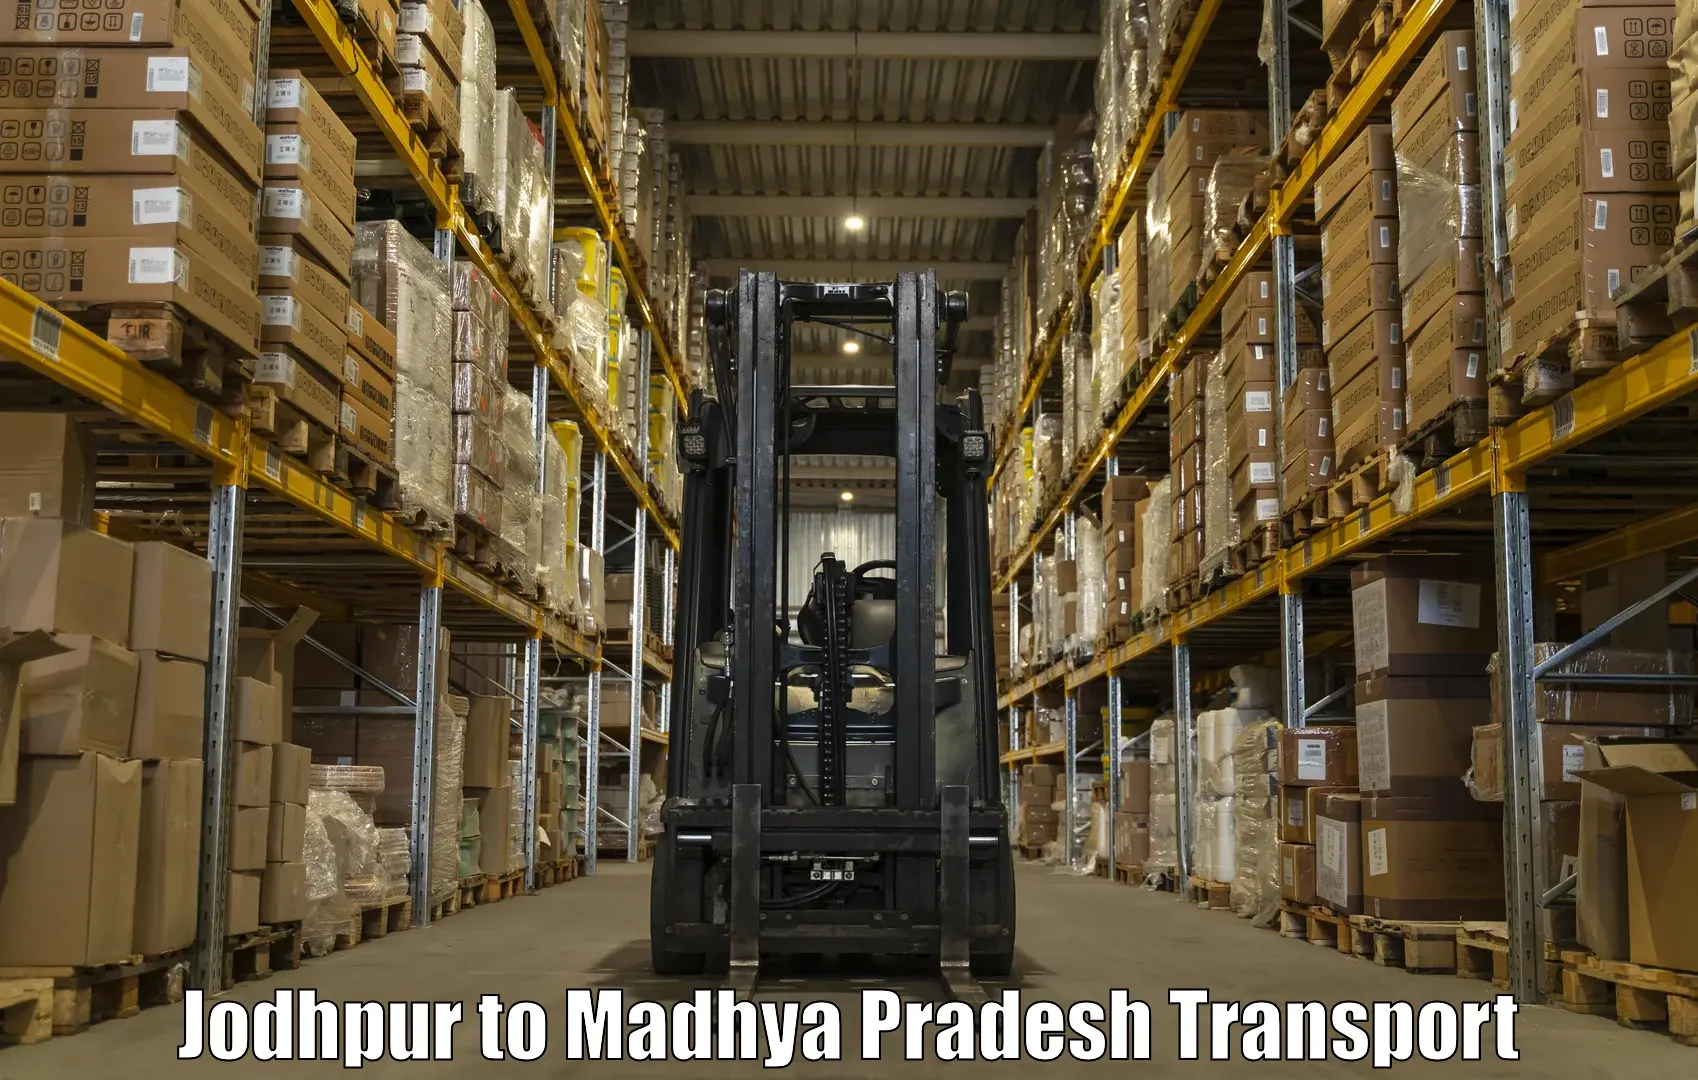 Online transport service Jodhpur to Malanjkhand